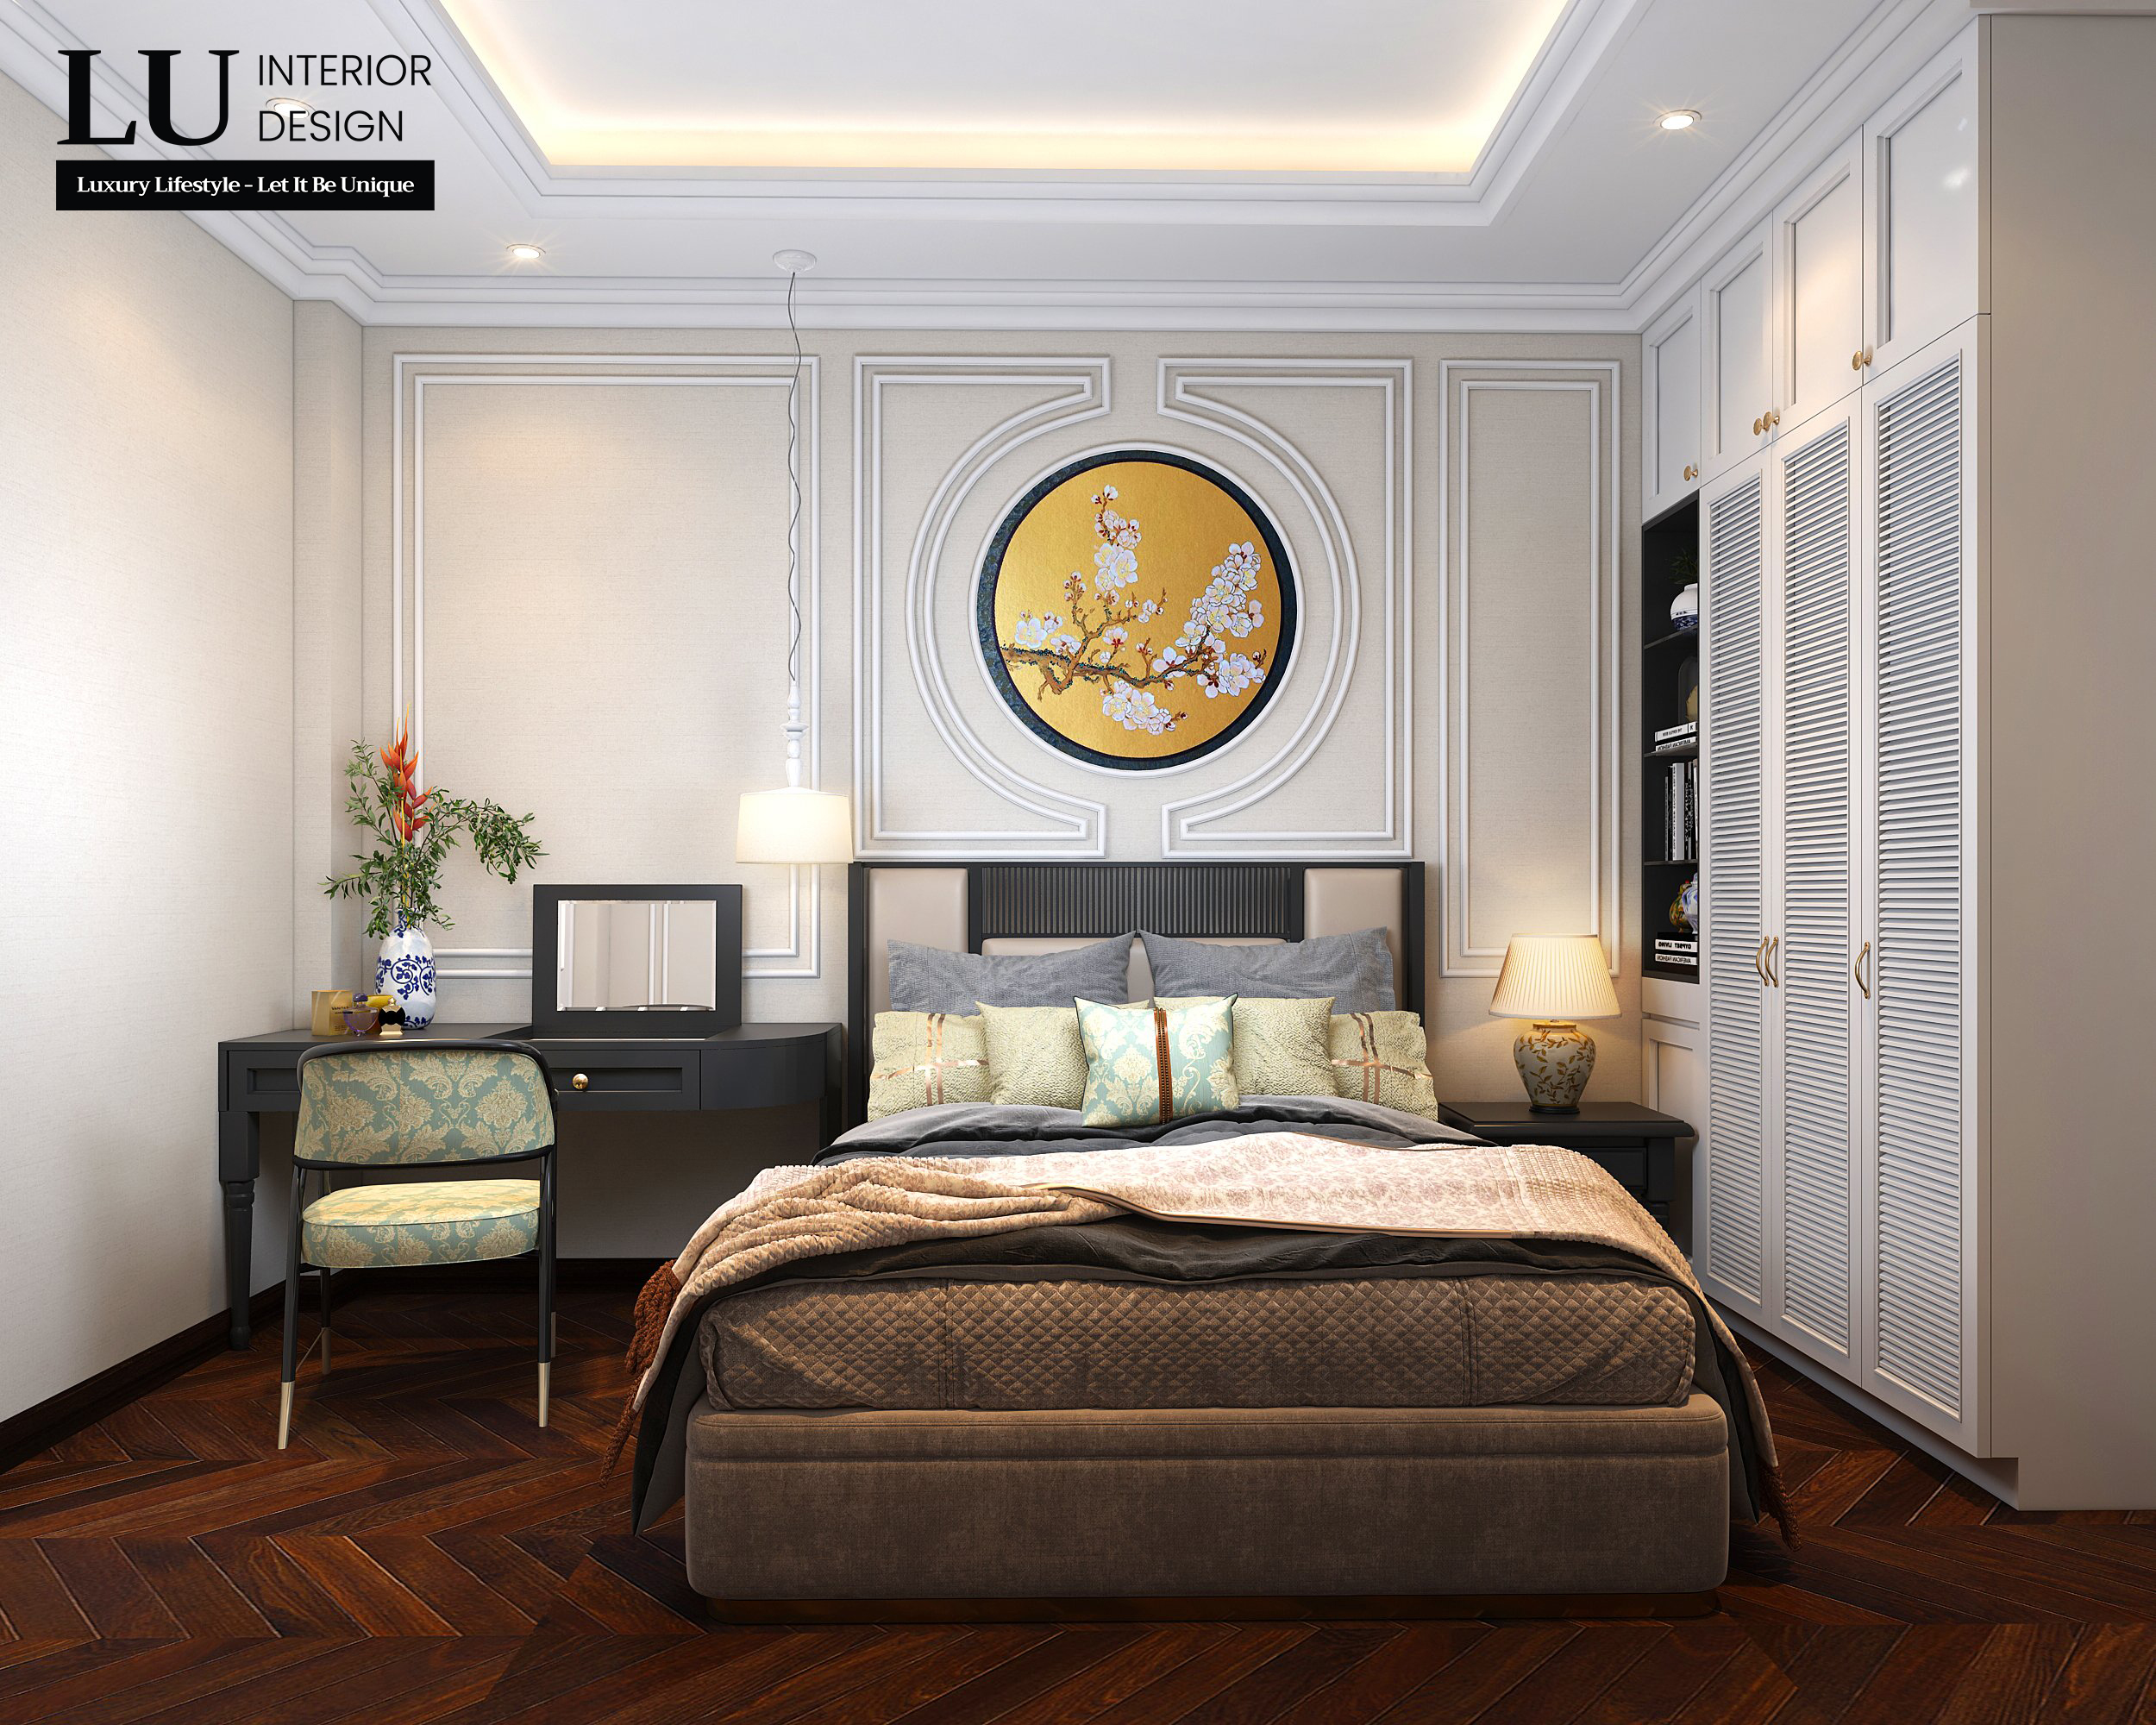 Các khung vòm hình tròn - nét đặc trưng của Indochine được ứng dụng trong các chi tiết trang trí nội thất cho phòng ngủ. Ảnh: LU Design